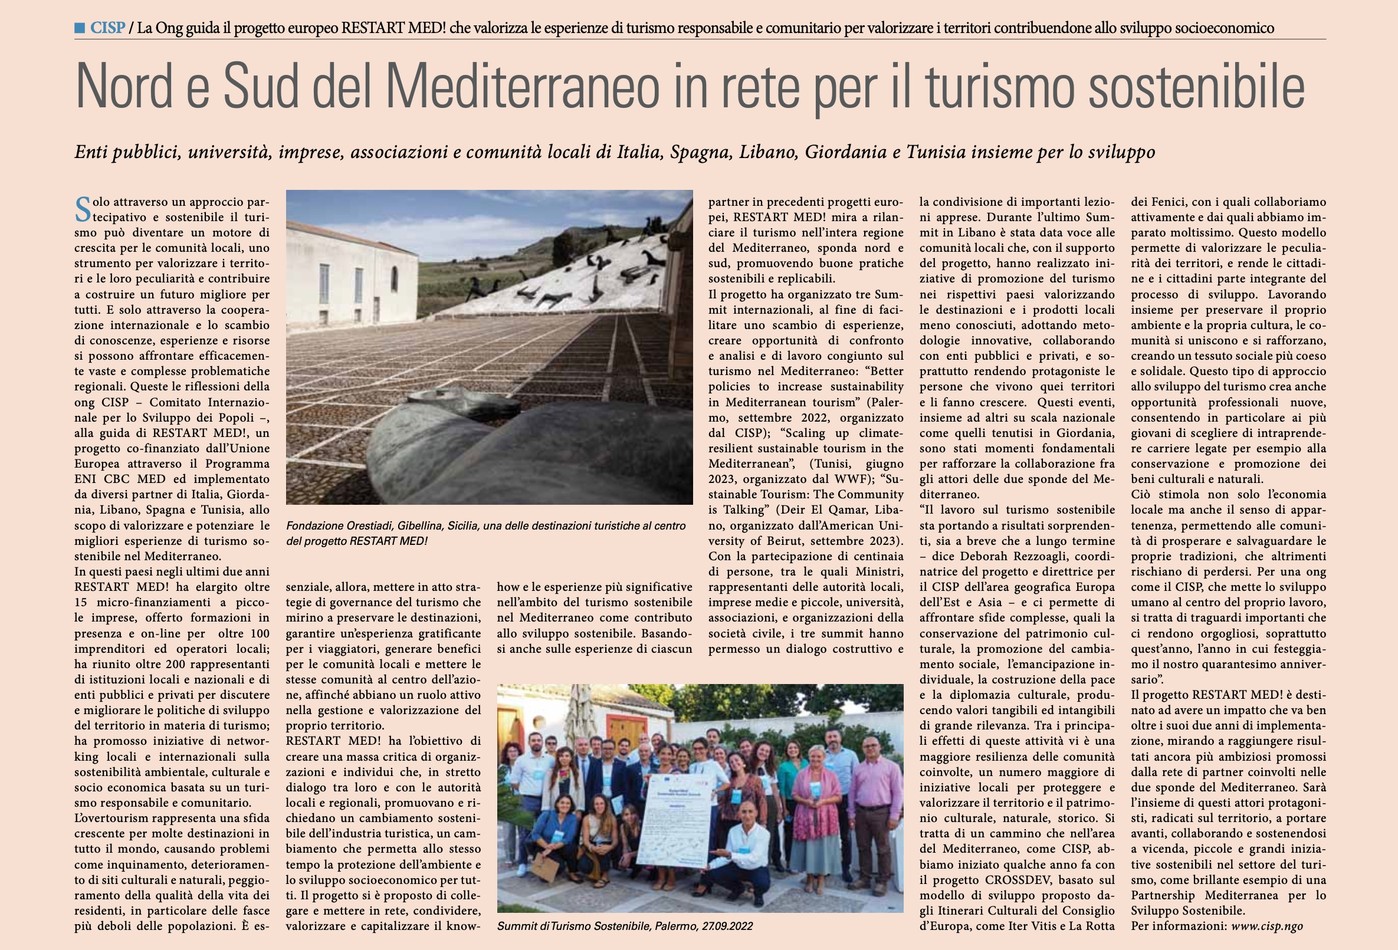 Nord e Sud del Mediterraneo in rete per il turismo sostenibi ... Image 1